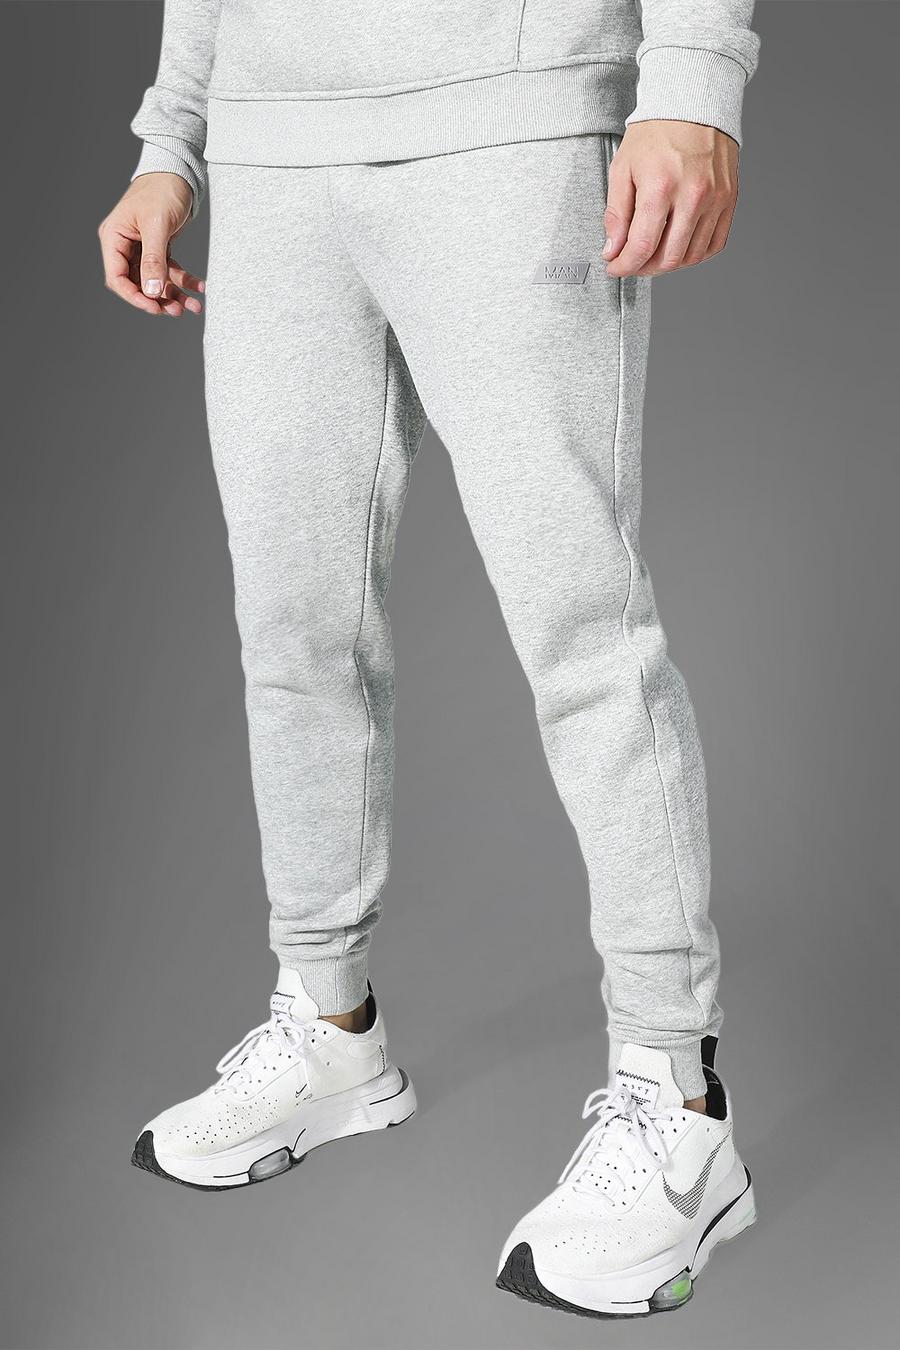 Pantalón deportivo MAN Active, Grey marl grigio